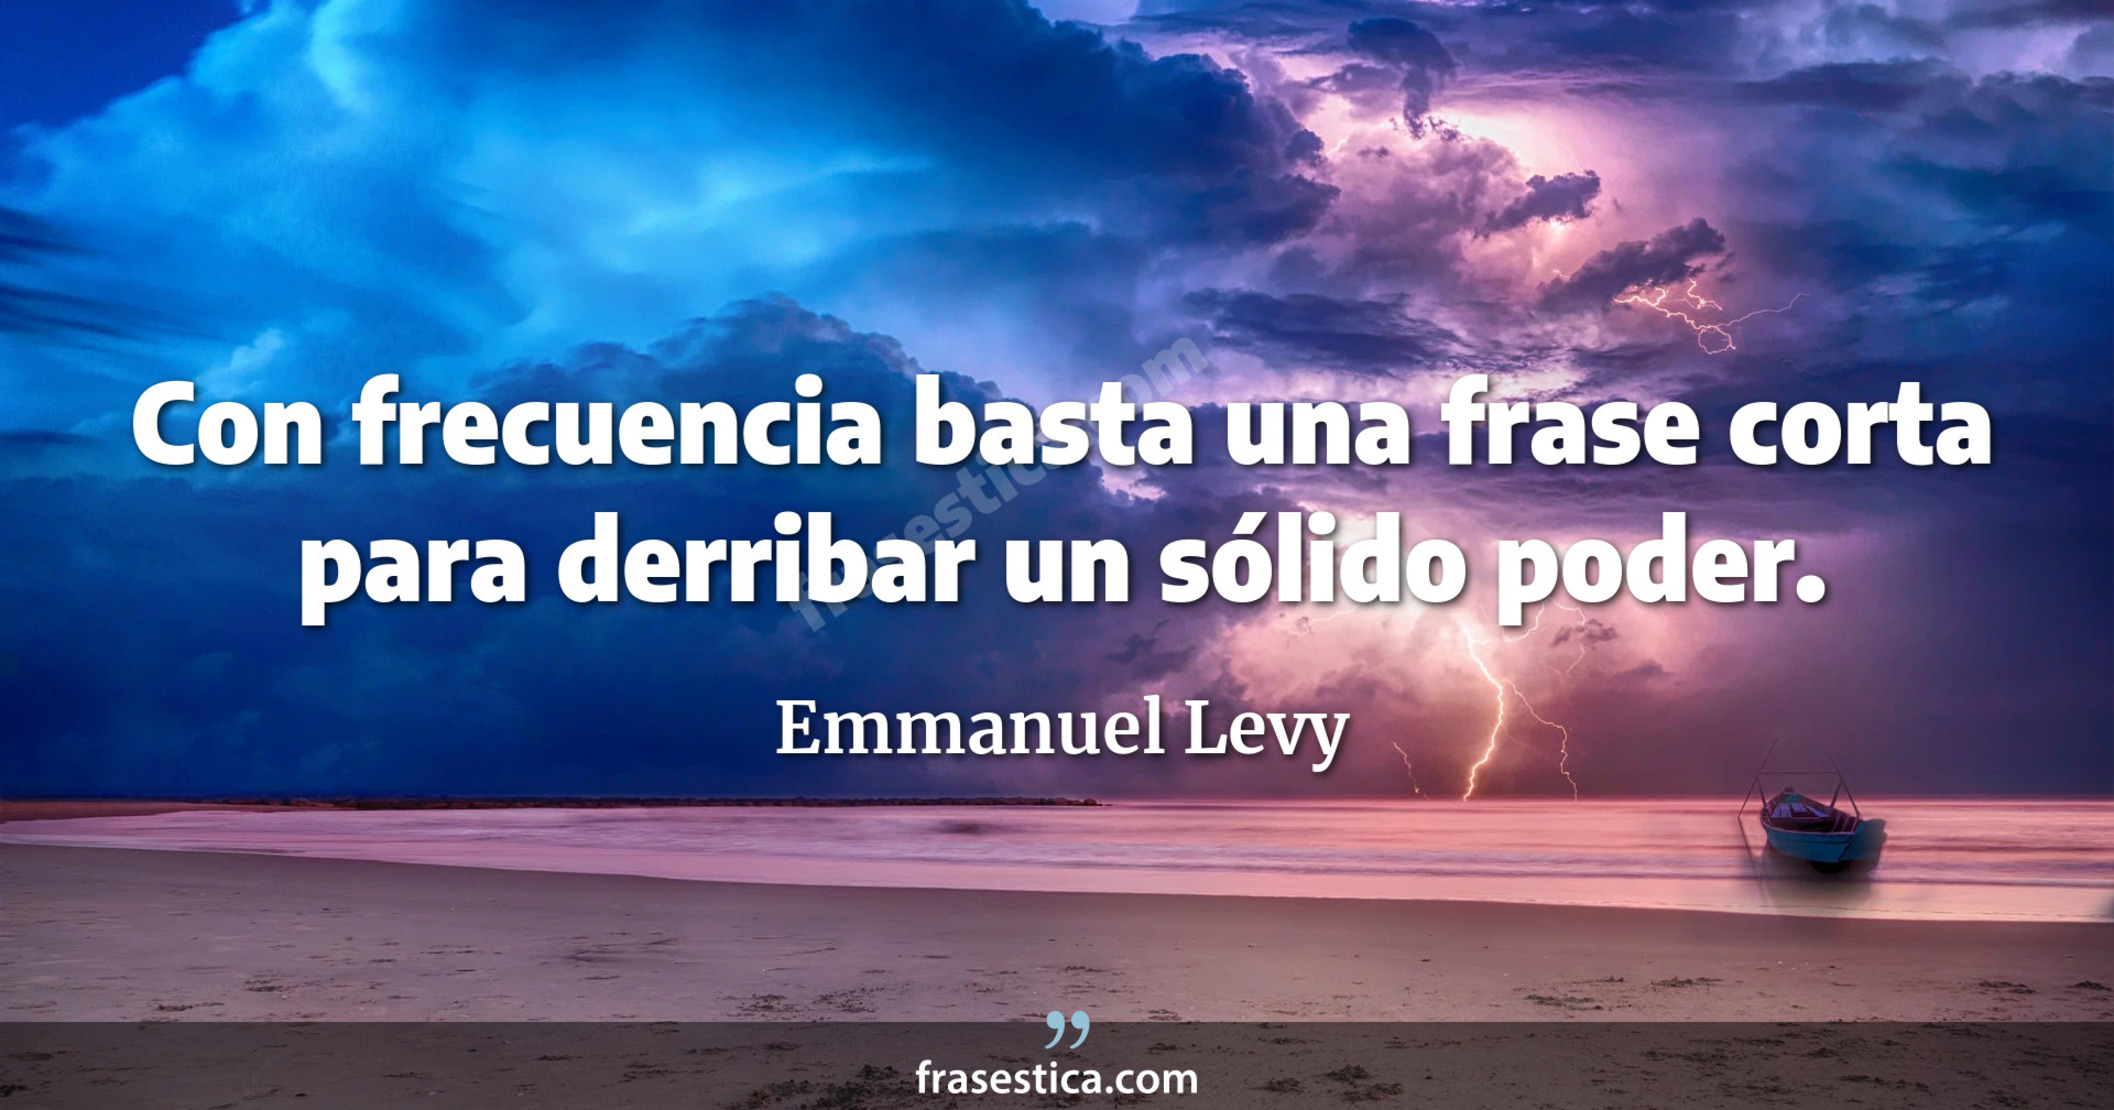 Con frecuencia basta una frase corta para derribar un sólido poder.  - Emmanuel Levy